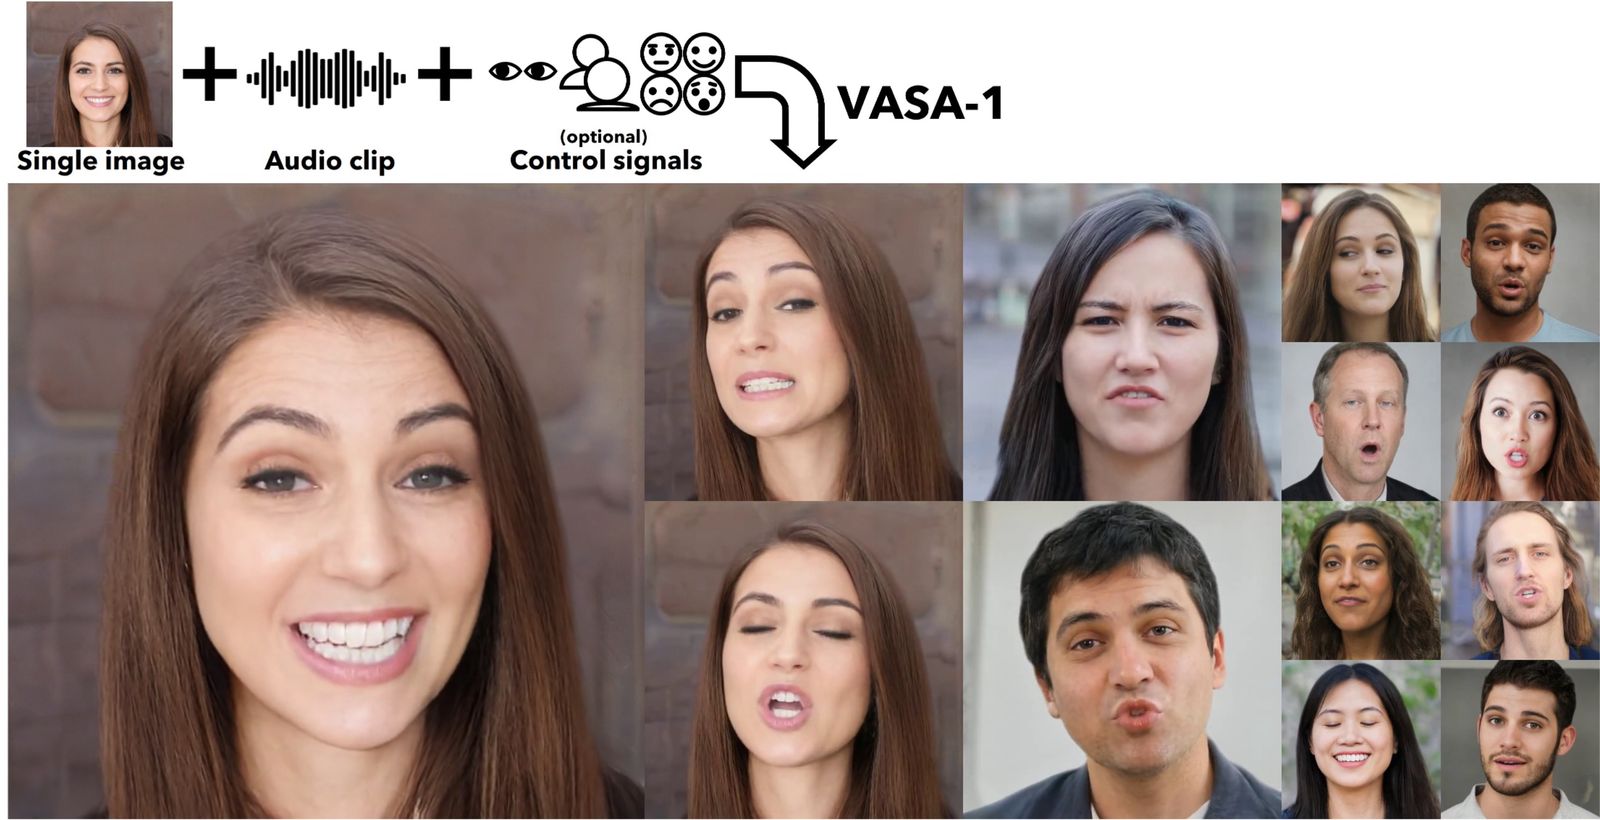 Verschiedene Gesichtsausdrücke von Personen, die durch Microsoft VASA-1 Technologie aus einem einzigen Bild und einem Audio-Clip generiert wurden.